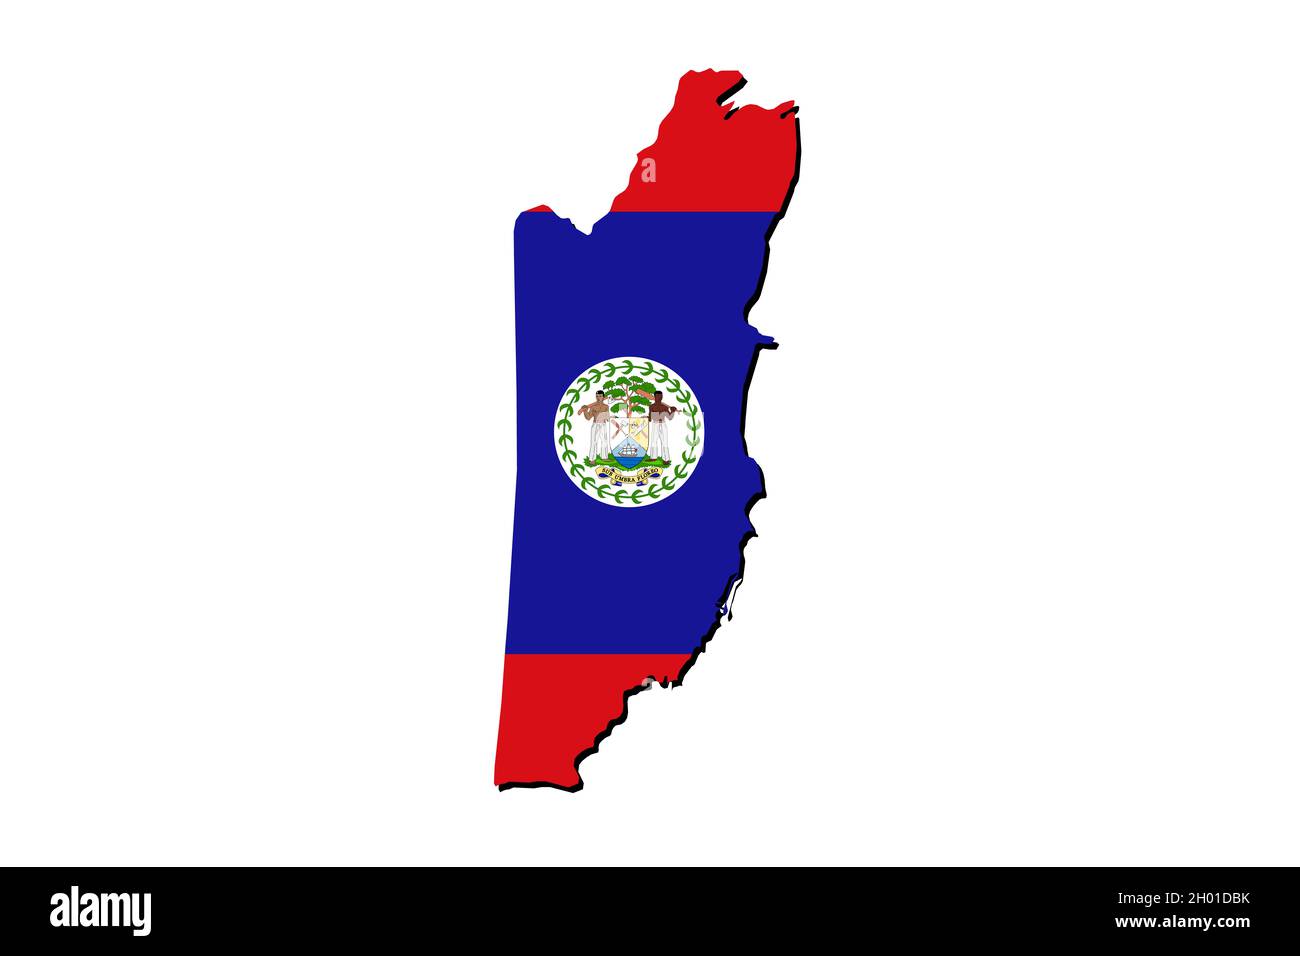 Übersichtskarte von Belize mit überlagerter Nationalflagge. 3D-Grafiken, die einen Schatten auf den weißen Hintergrund werfen Stockfoto